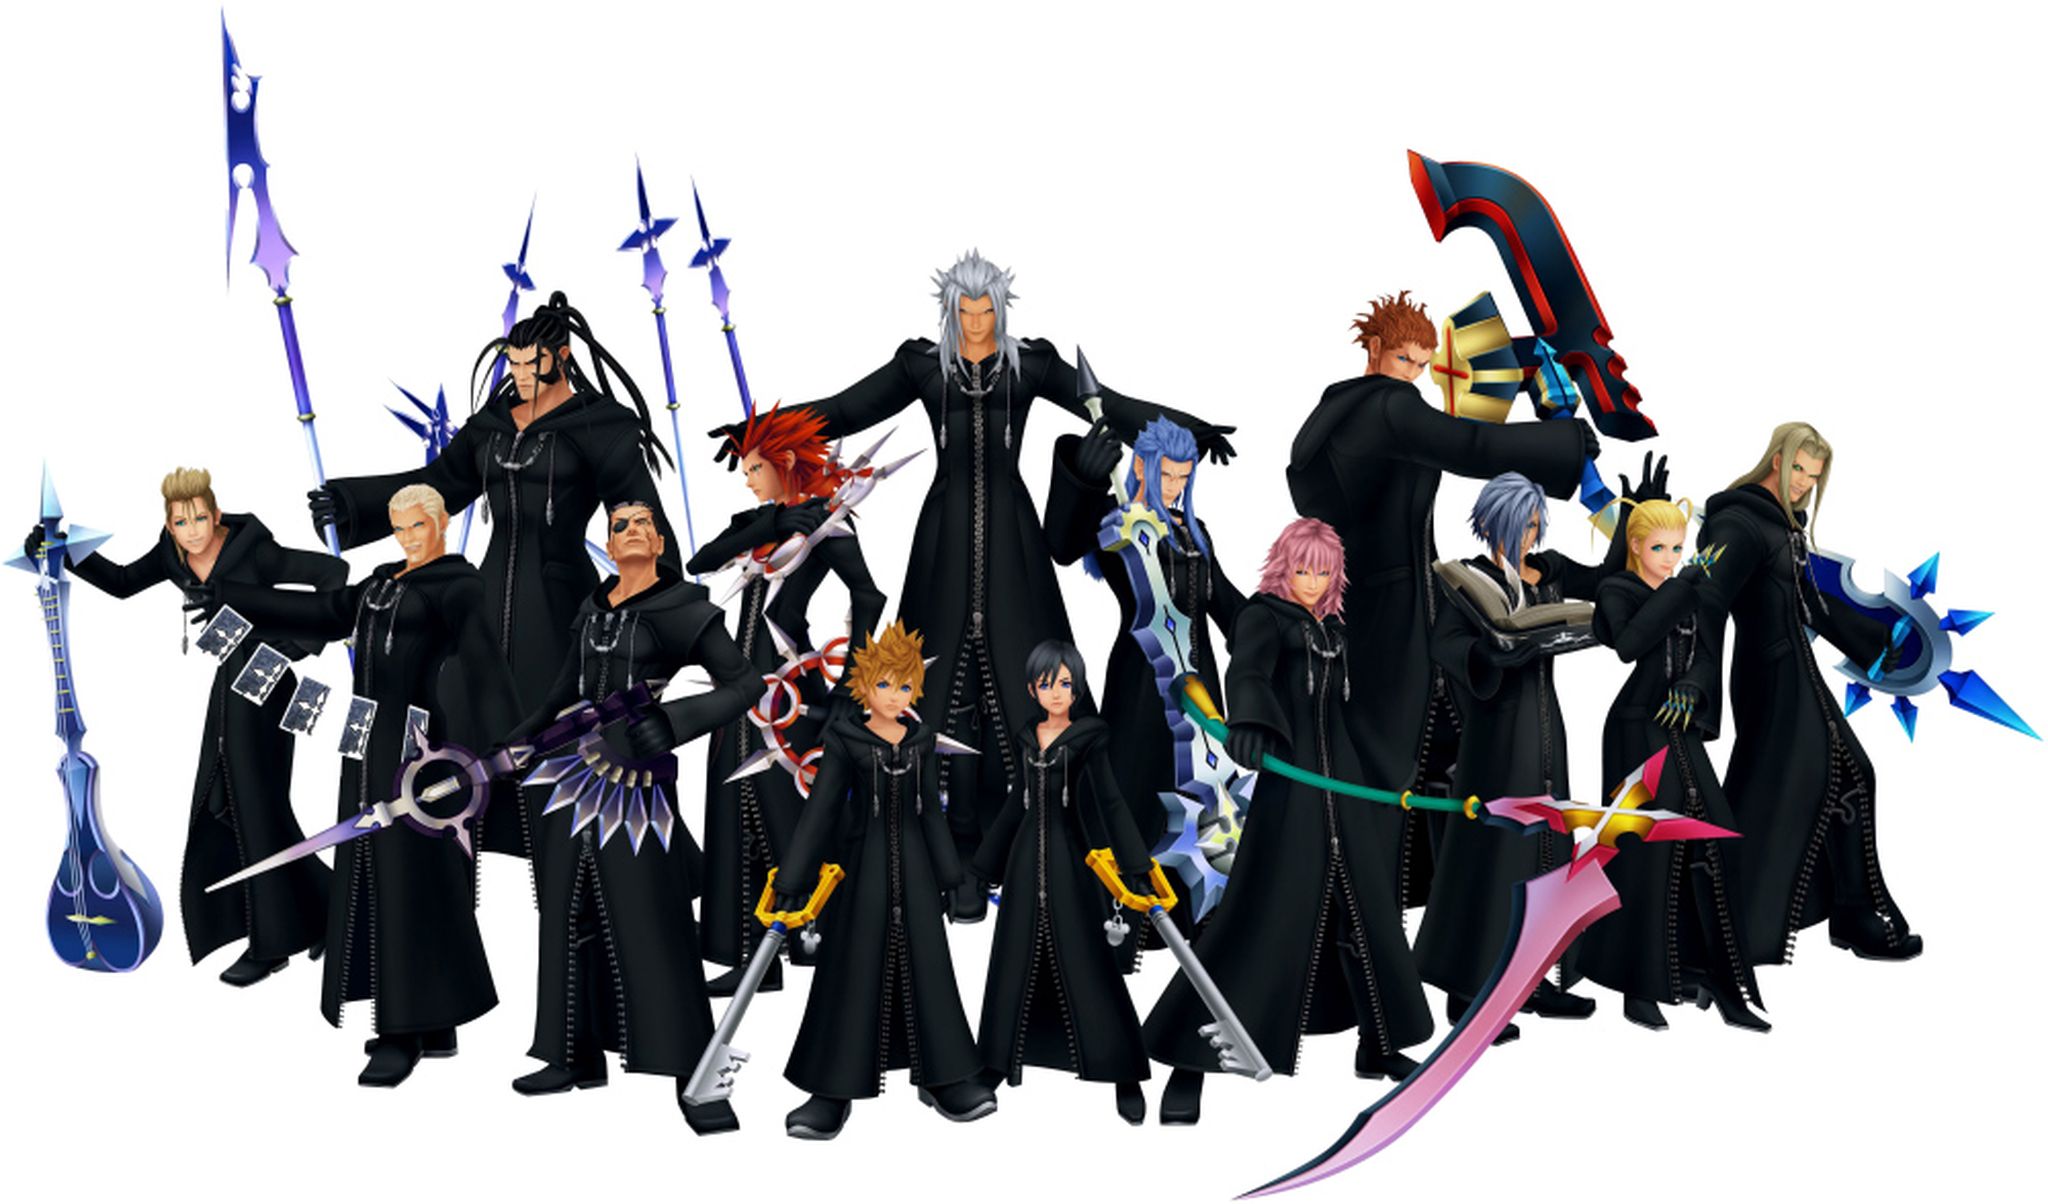 Los mejores disfraces de Kingdom Hearts - Organización XIII